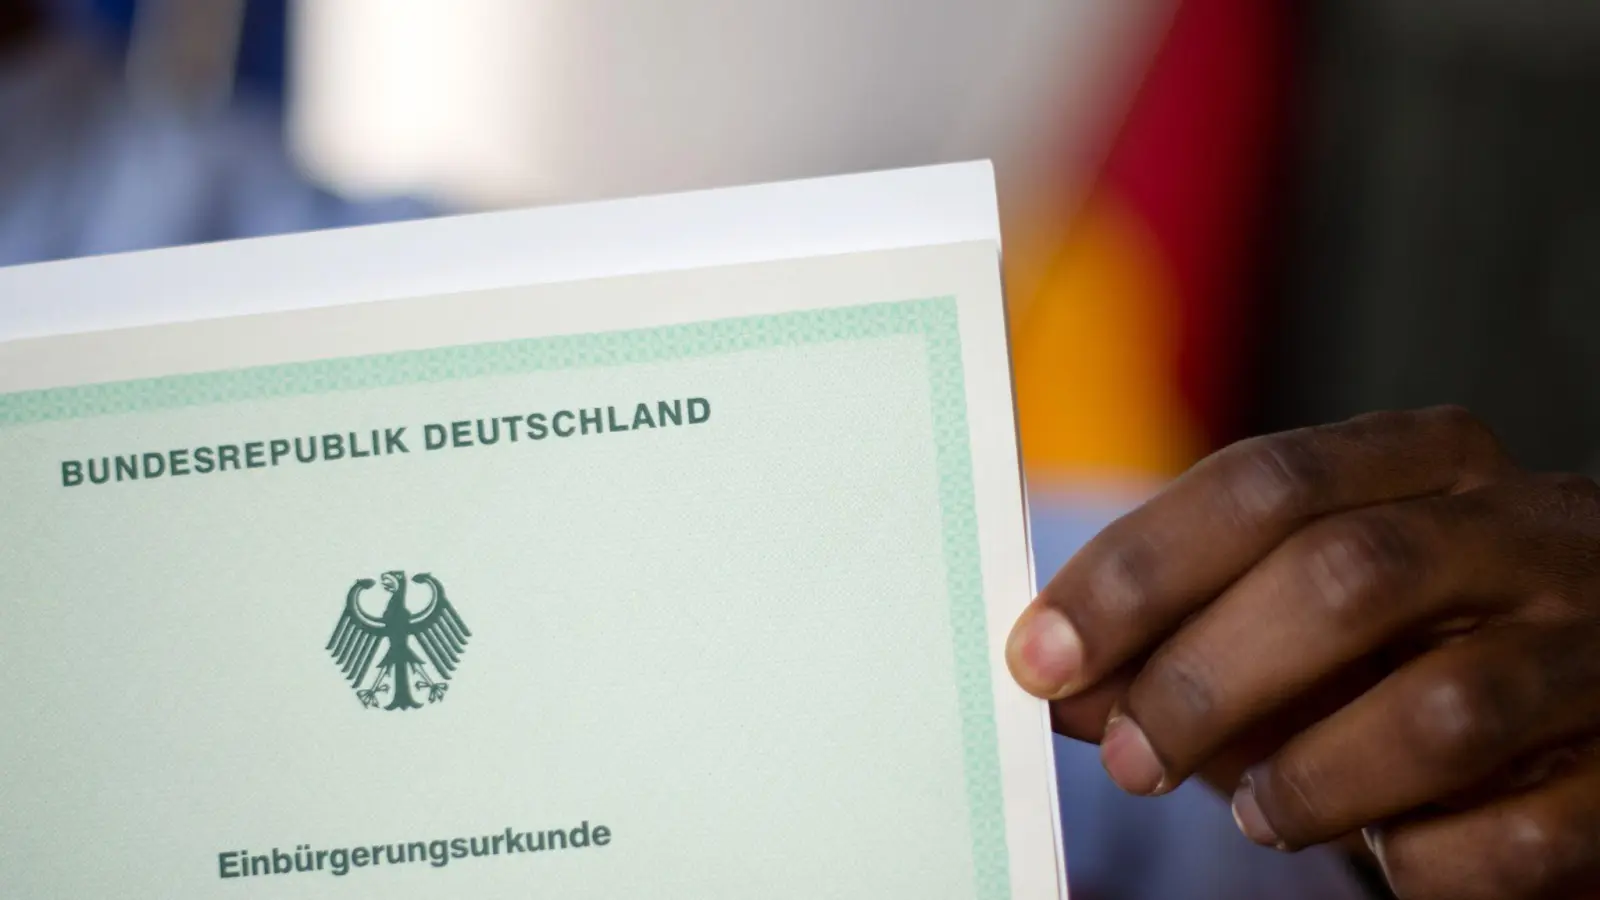 Menschen, die bereits mehrere Jahre in Deutschland leben, sollen leichter deutsche Staatsbürger werden können. (Foto: Julian Stratenschulte/dpa/dpa-tmn)